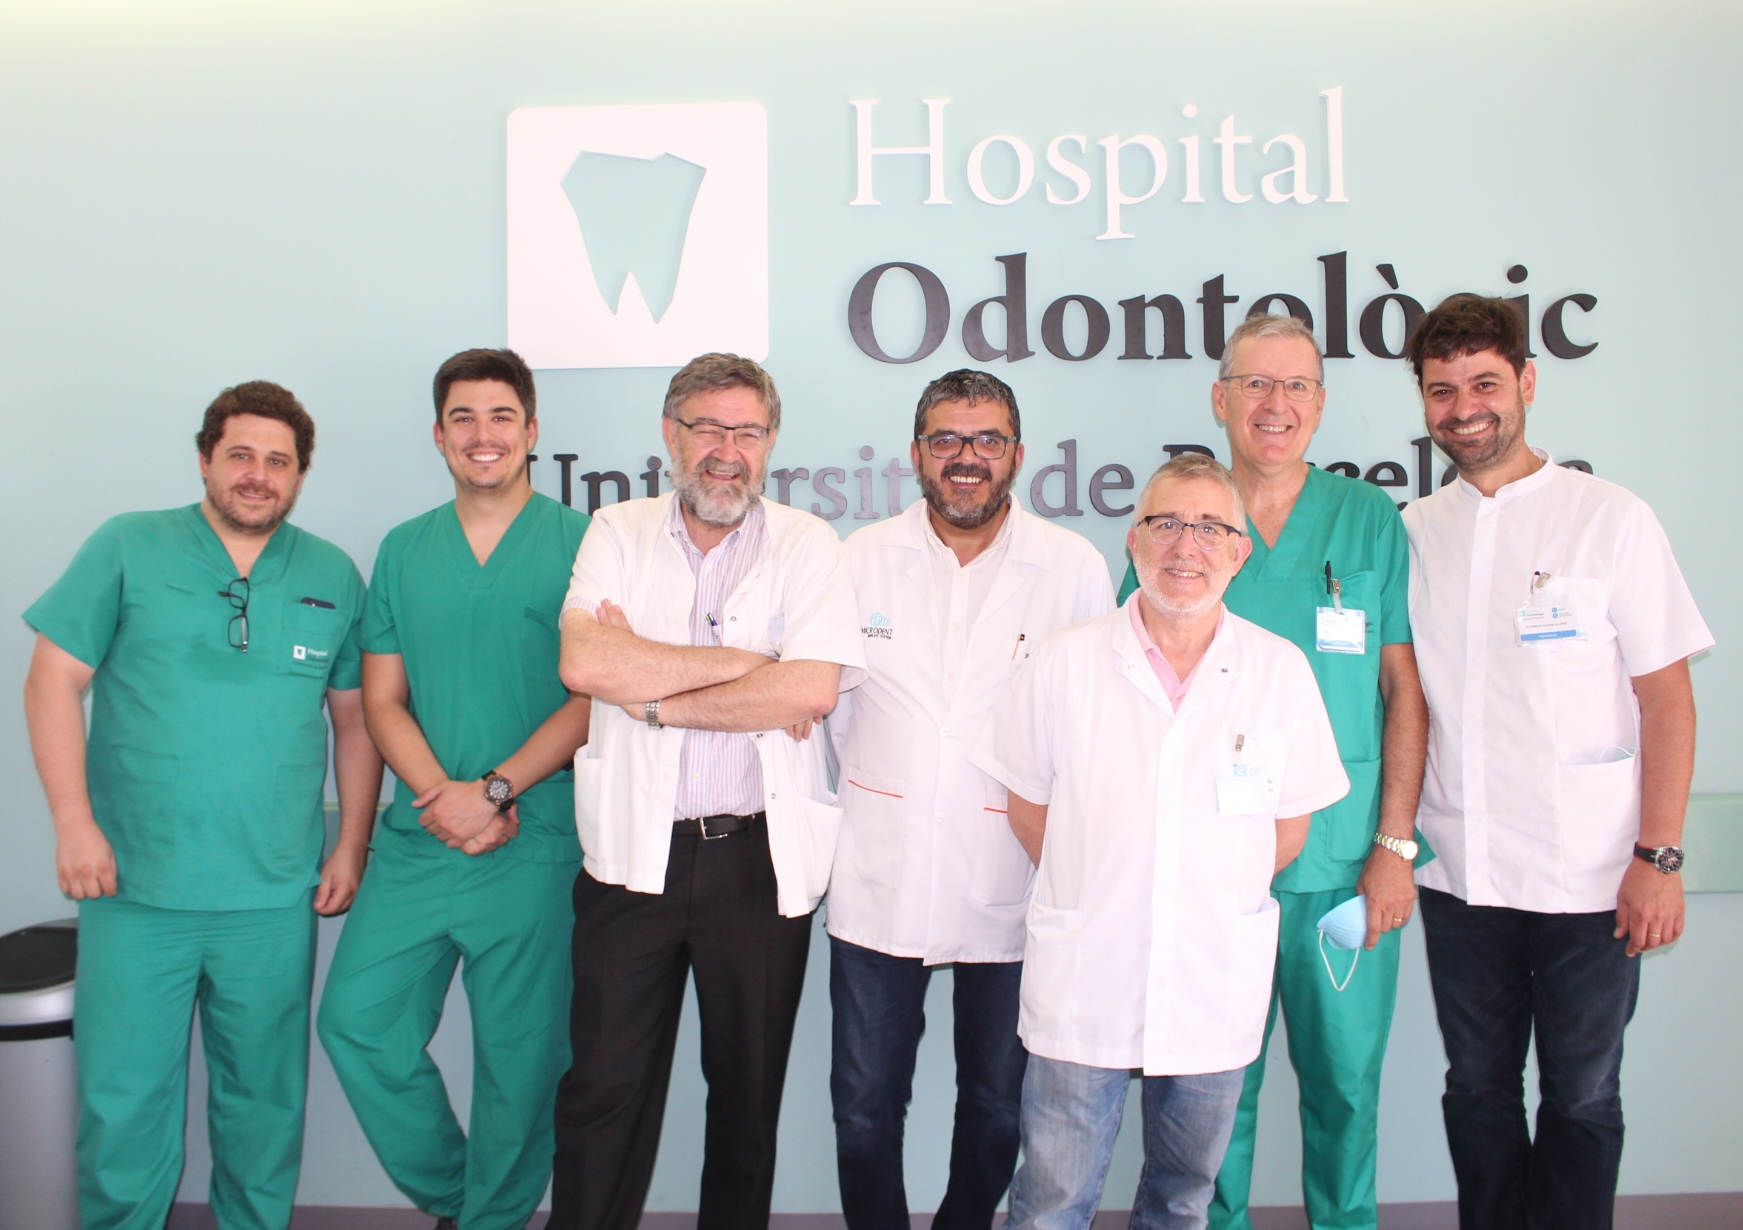 Se ha celebrado un nuevo taller intensivo de cirugía implantológica avanzada en el Hospital Odontològic UB